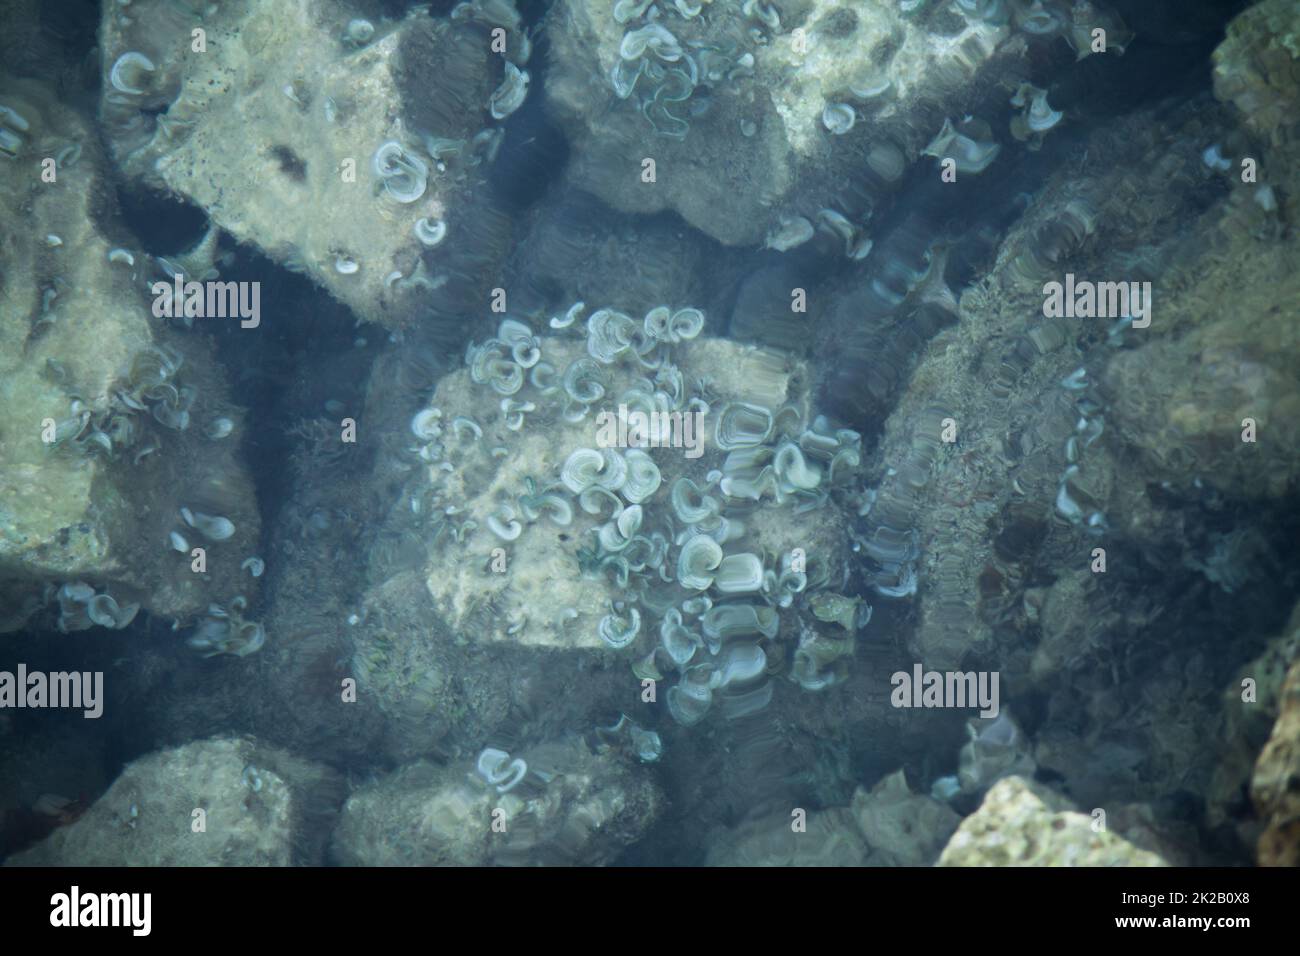 sea corals on a stone in the sea Stock Photo